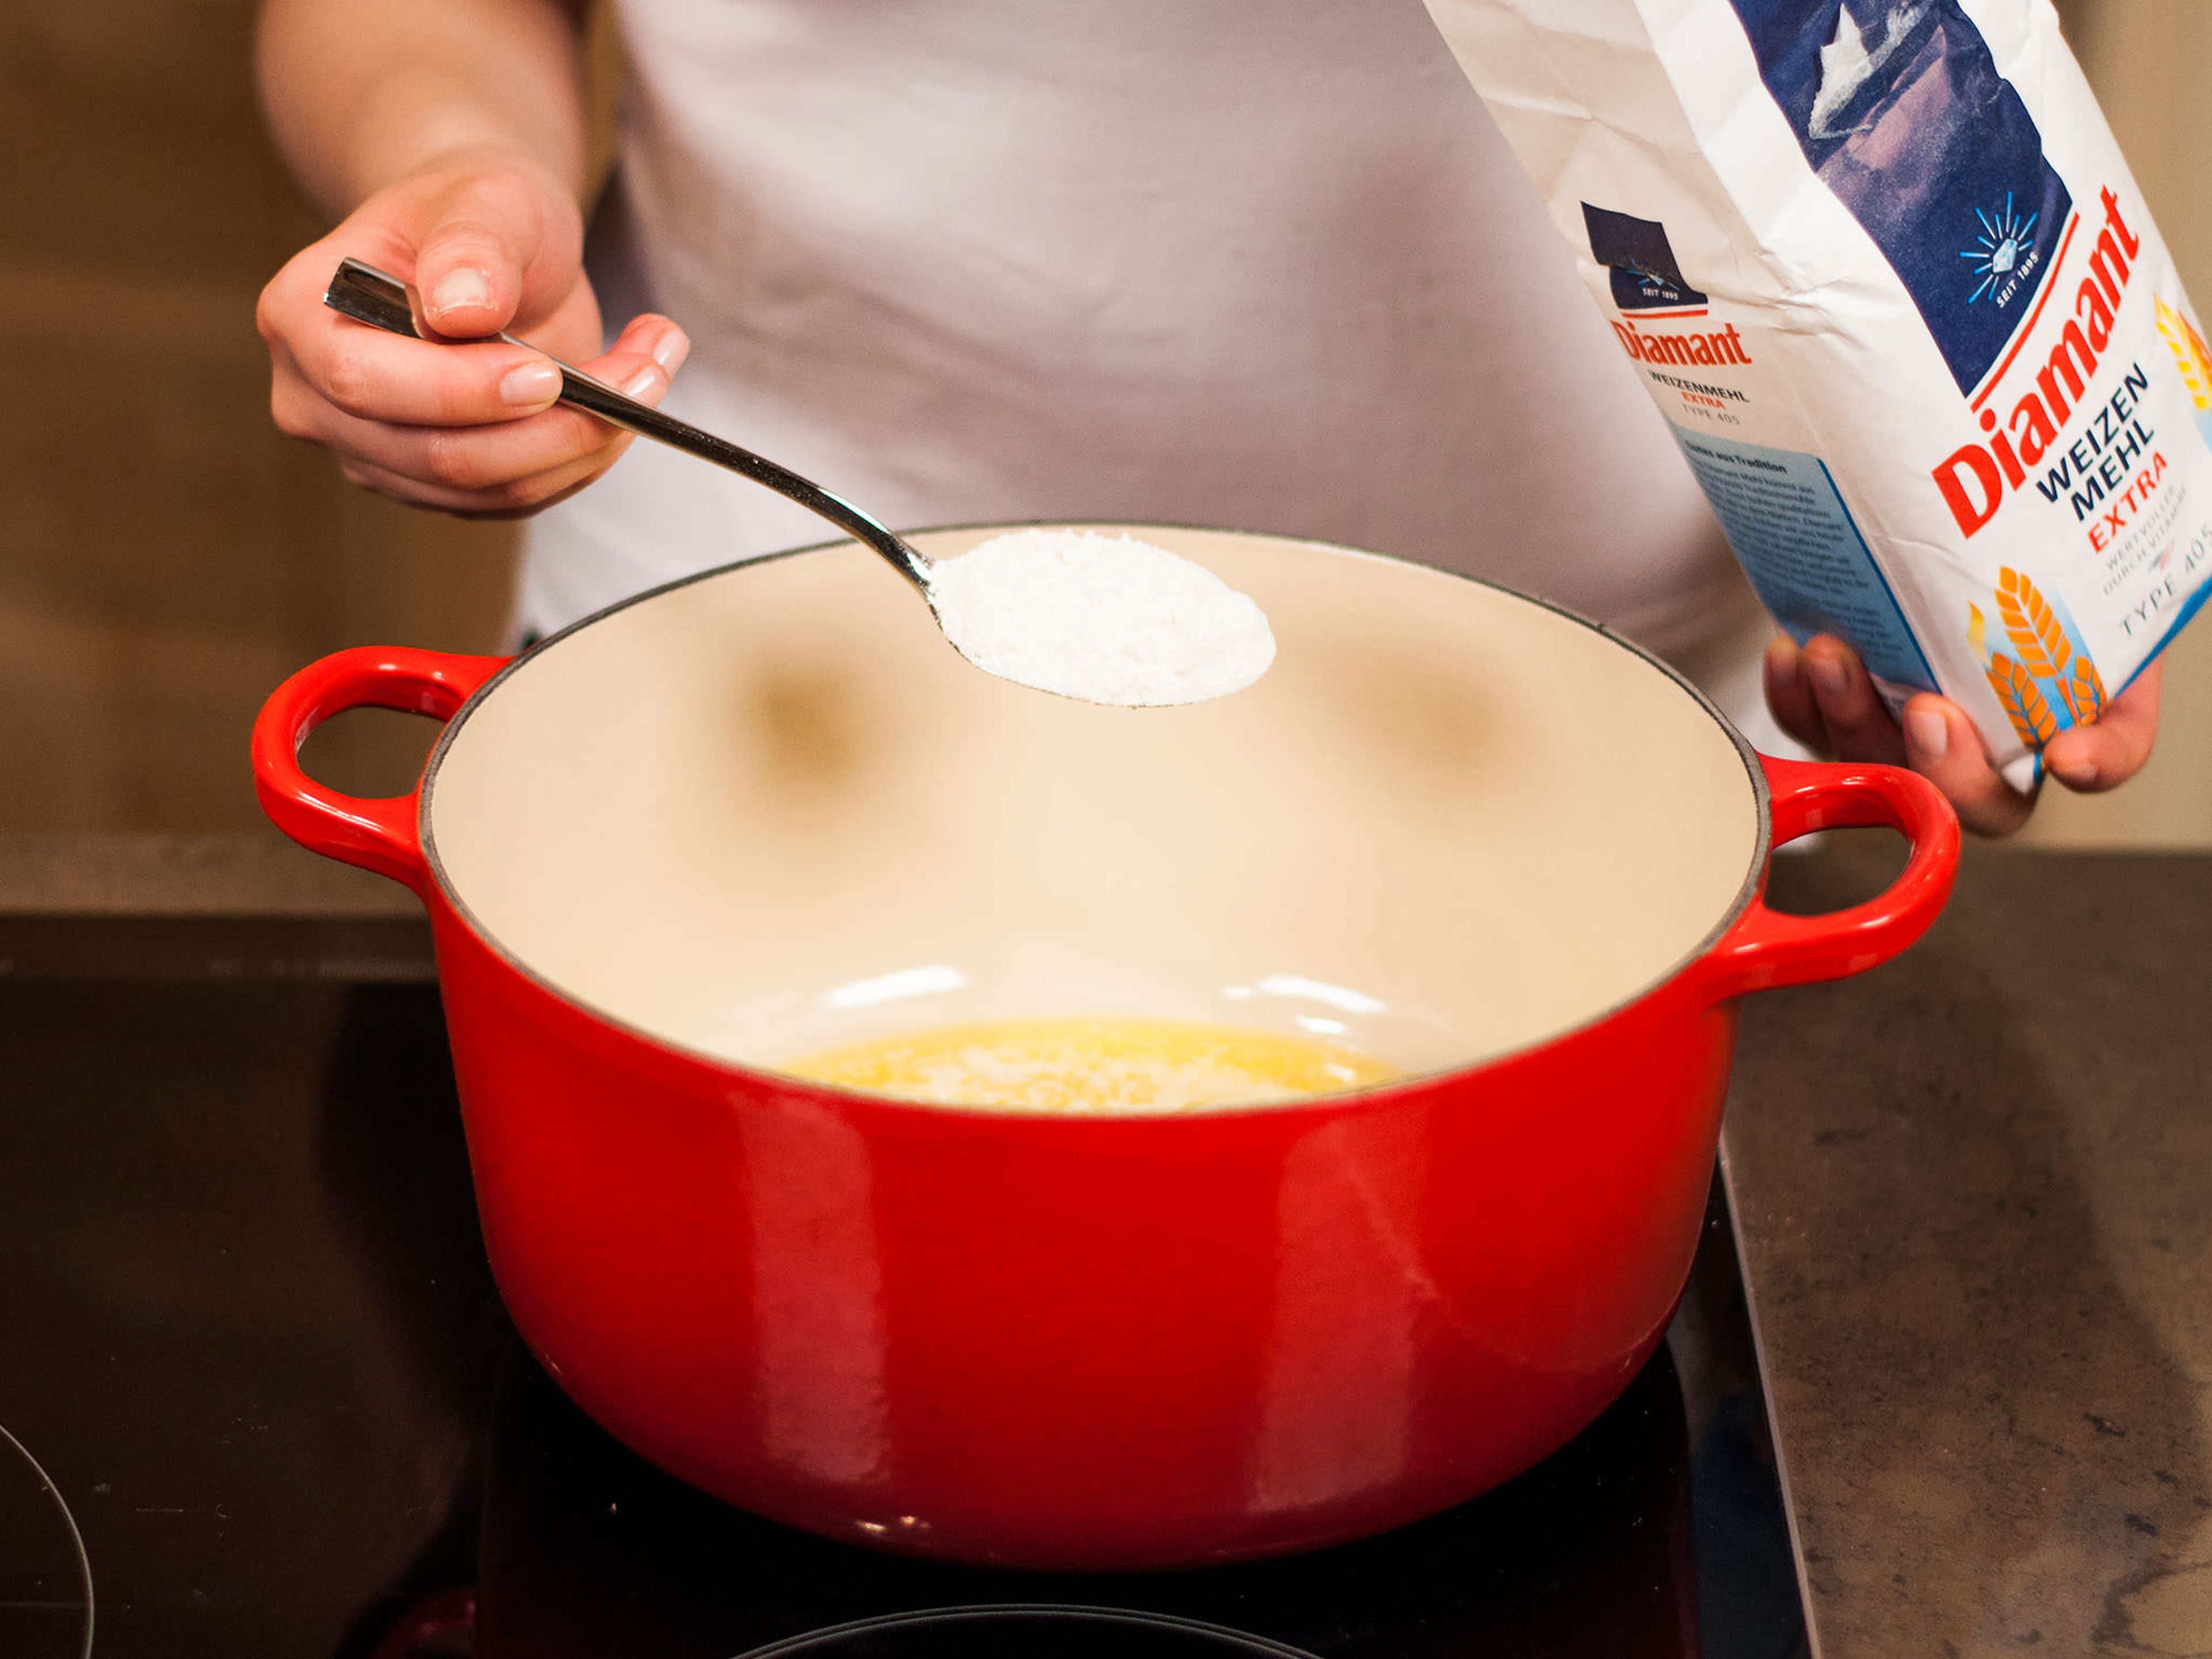 Den Ofen auf 200°C vorheizen. Für die Béchamelsauce, die Butter in einem kleinen Topf schmelzen. Mehl dazugeben und unter Rühren anrösten.